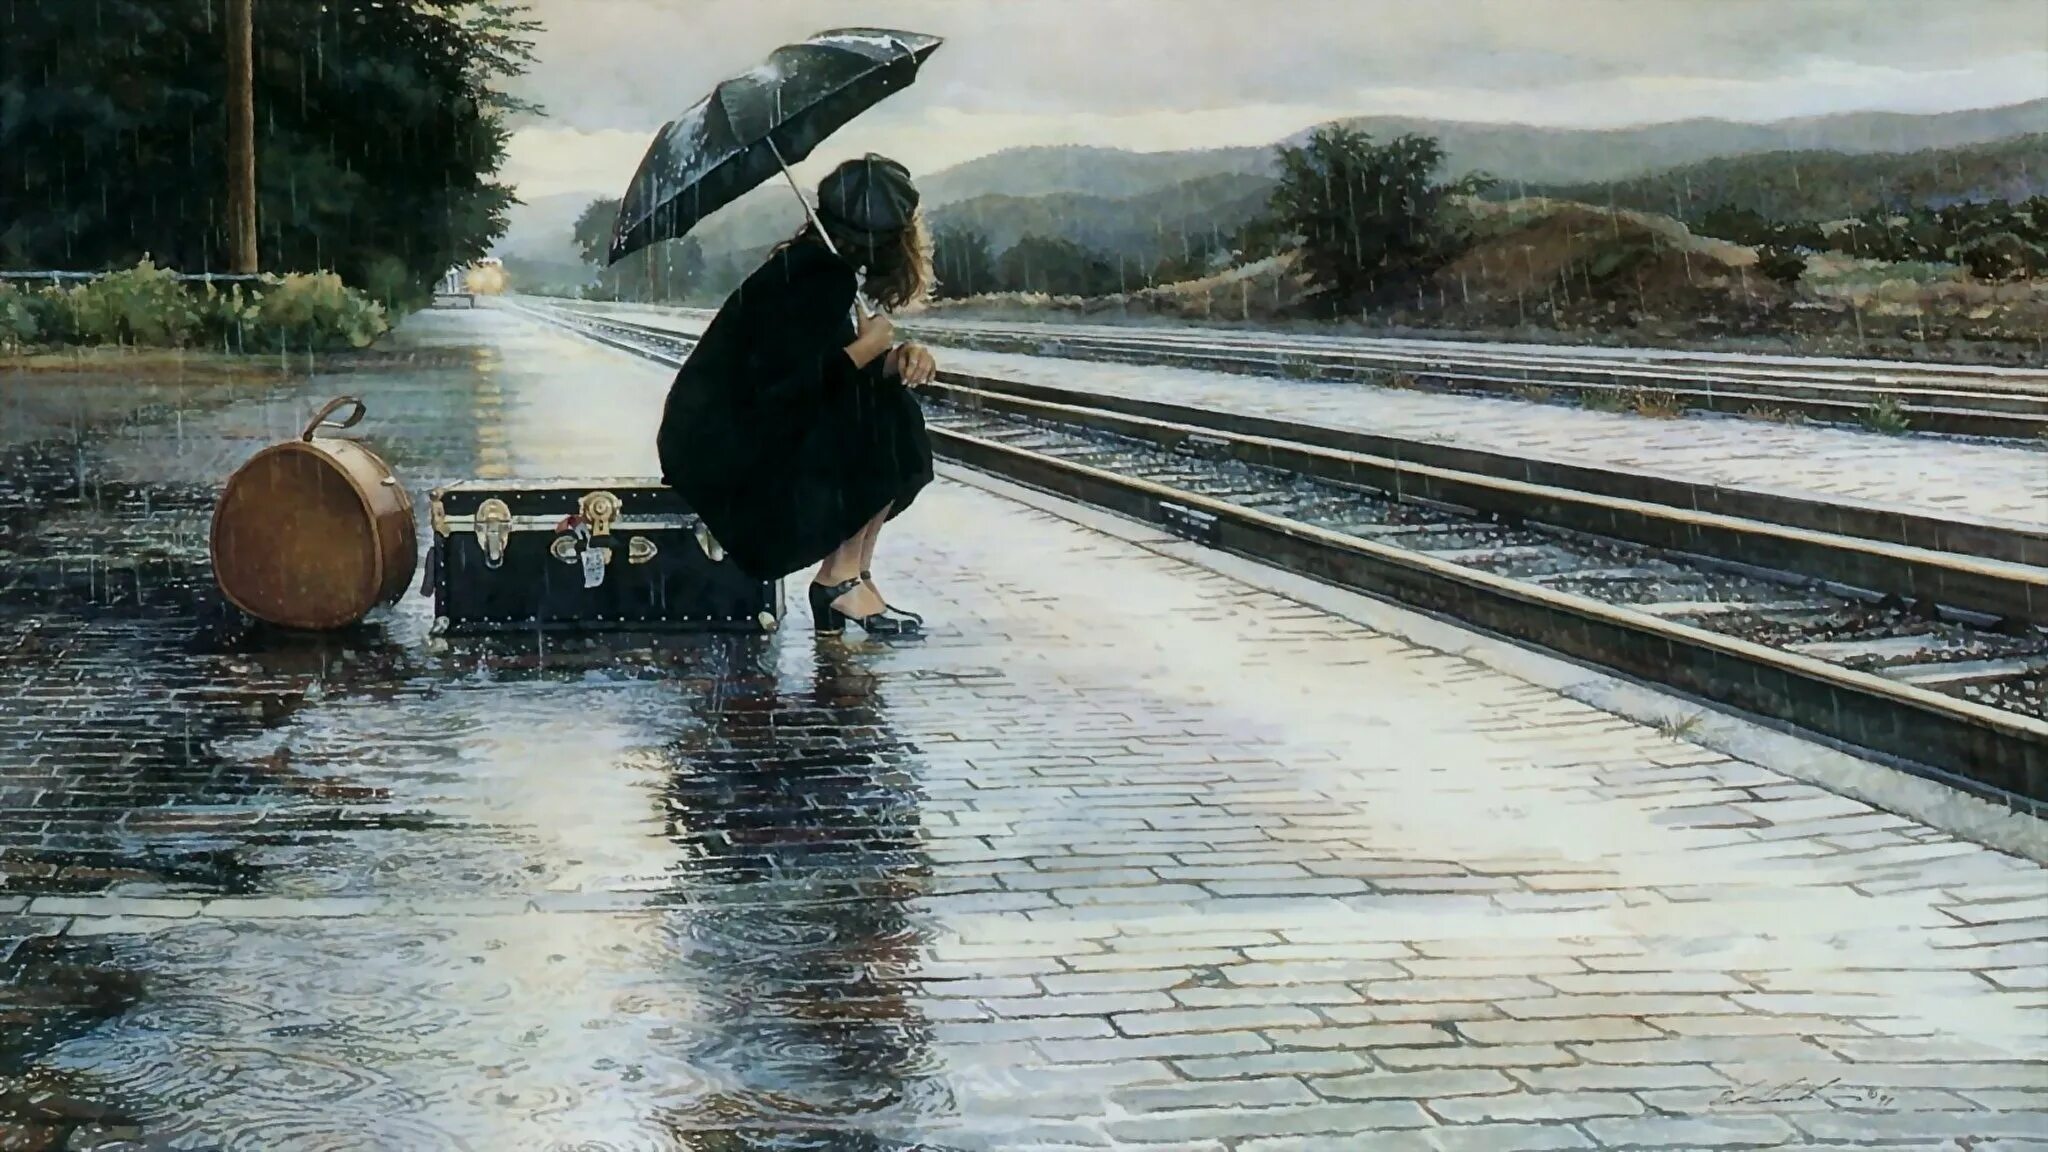 Запомнить на всю жизнь урок. Стив Хэнкс картины под дождем. «В ожидании поезда» (1880) Нестеров. Стив Хэнкс художник. Стив Хэнкс на перроне картина.